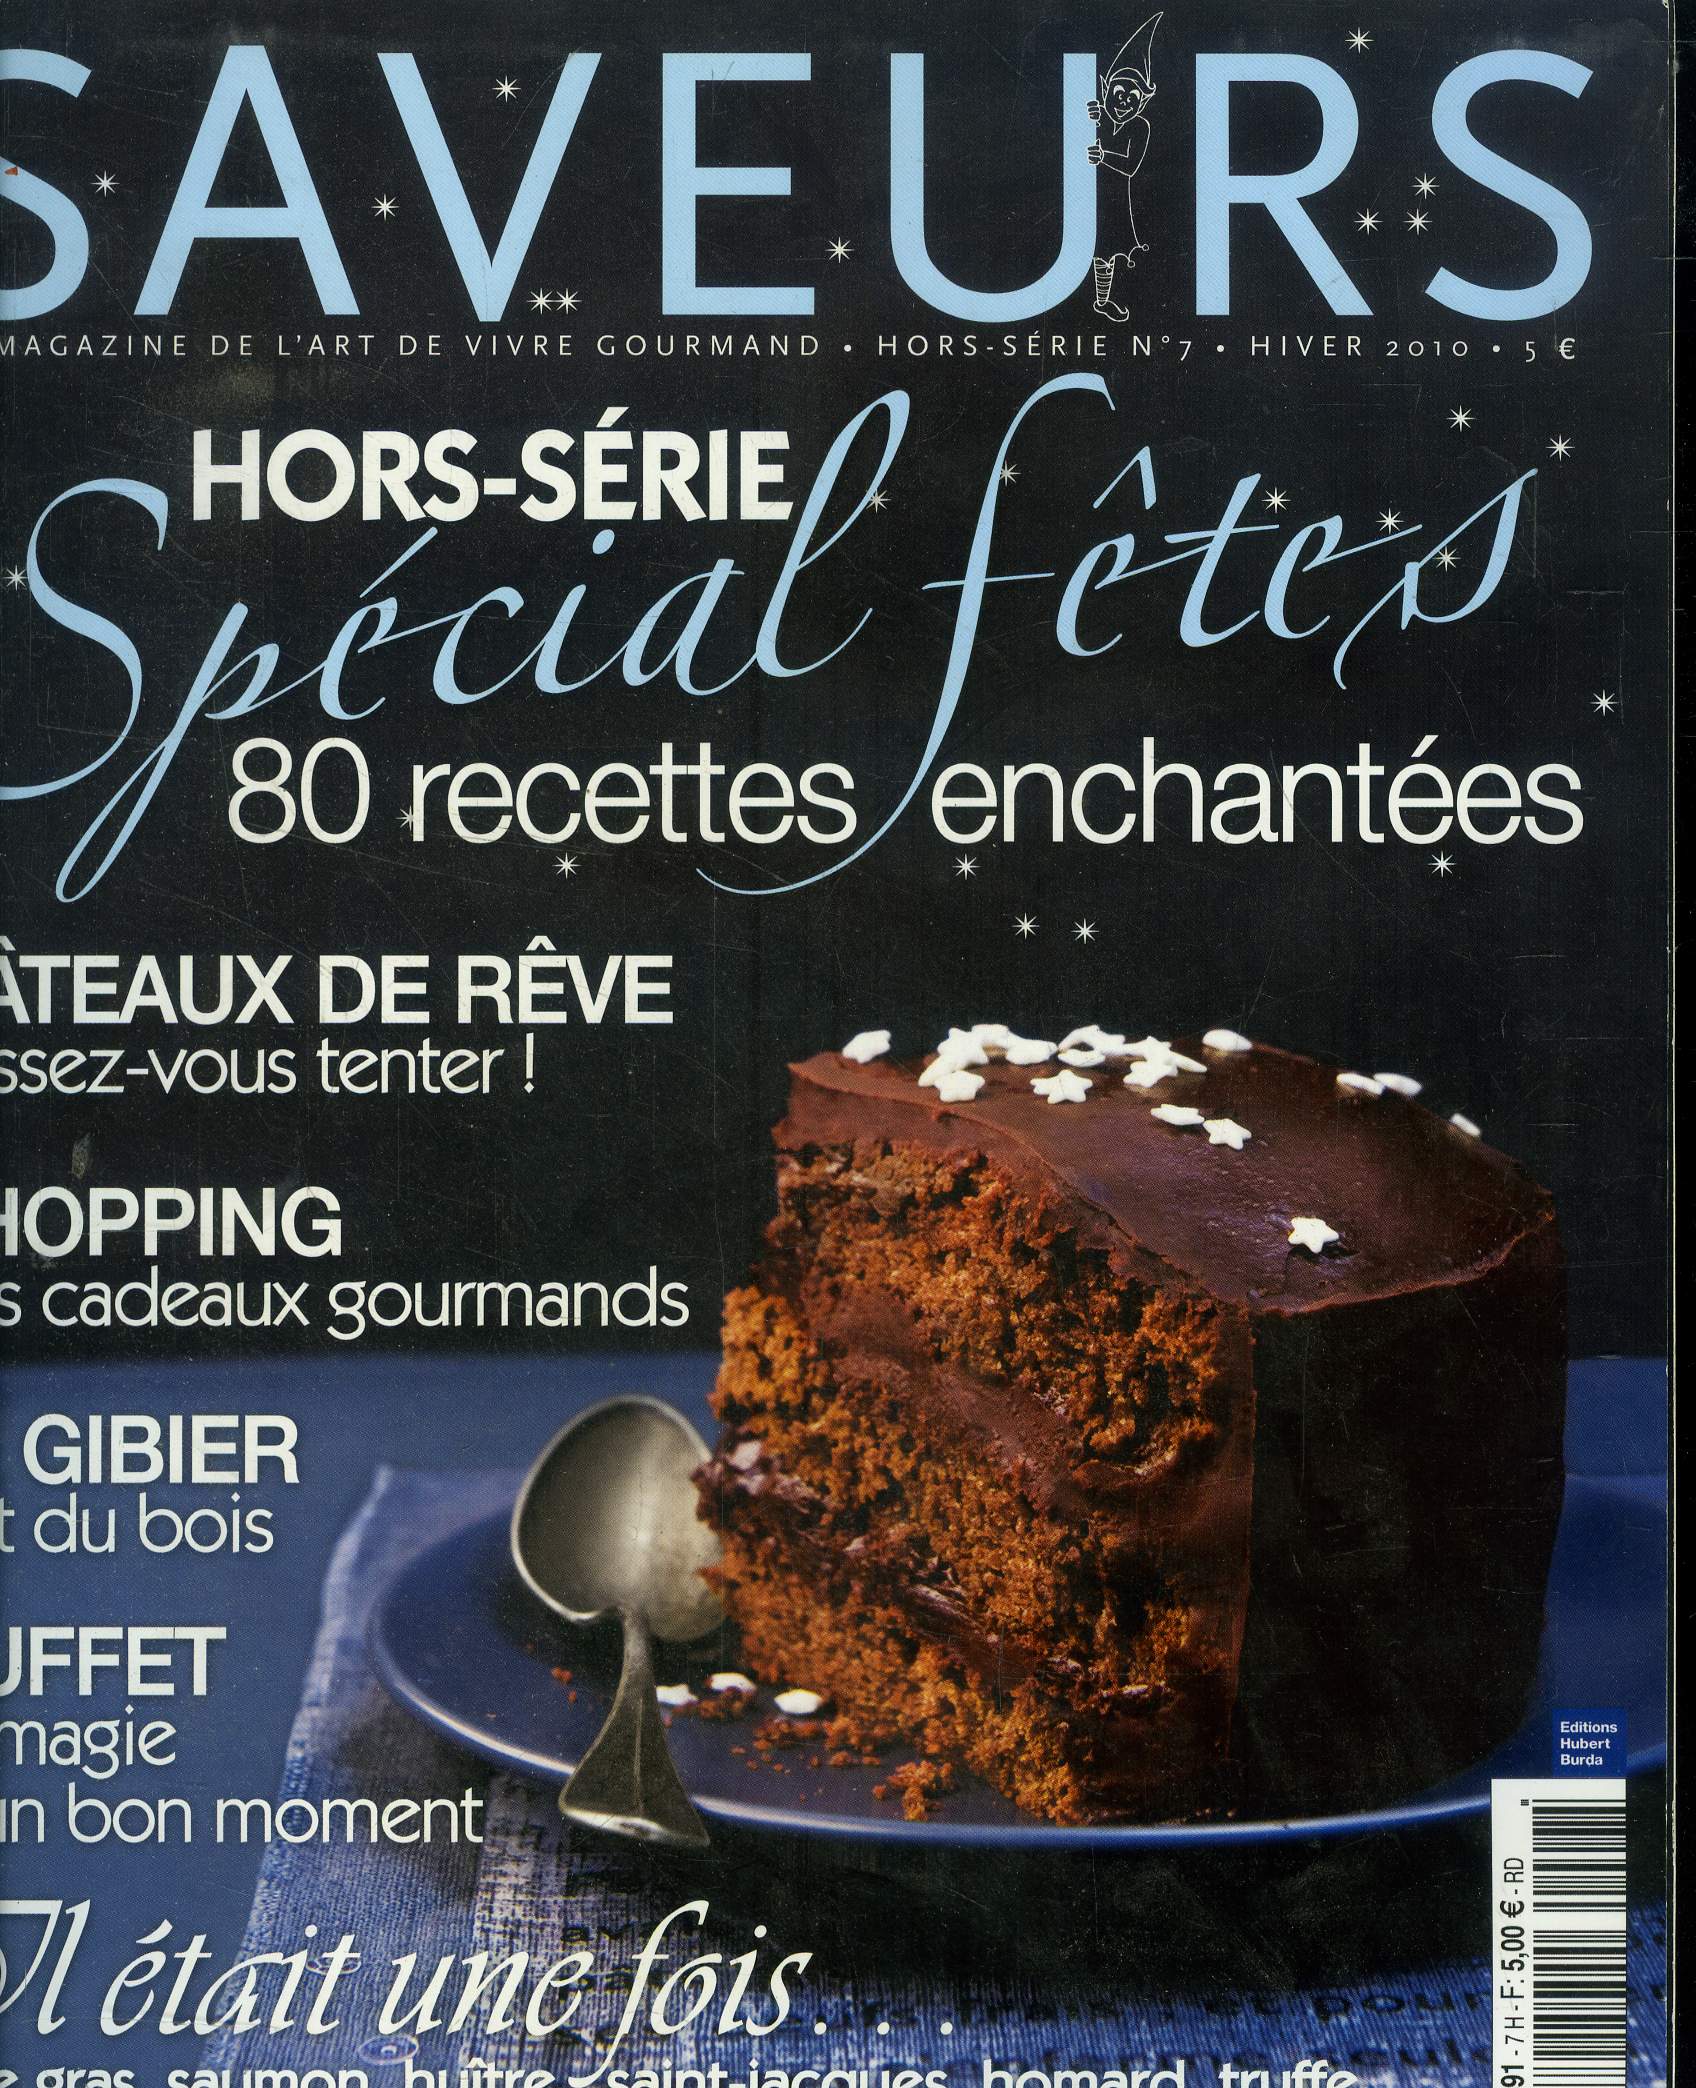 Saveurs - Hors-Srie - N7 - Hiver 2010 : Spcial ftes - 80 recettes enchantes - Gteaux de rve - Cadeaux gourmands - Le gibier - Buffet magique - Recettes de foie gras, saumon, hutre, saint-jacques, homard,truffe, chapon, petits biscuits, chocolat